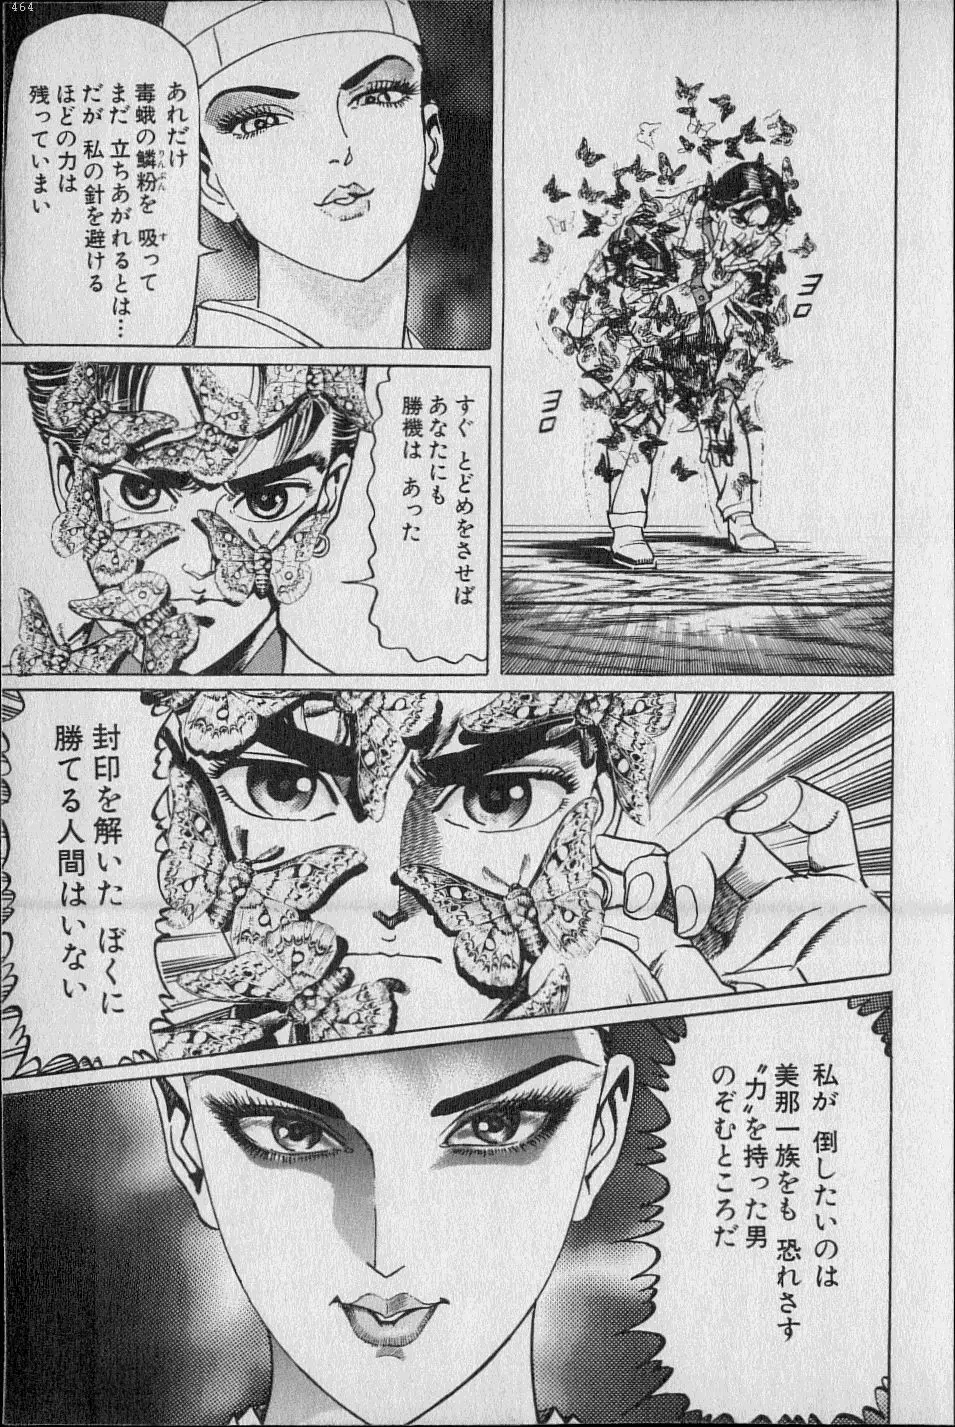 Kouryuu no Mimi Volume 02 64ページ